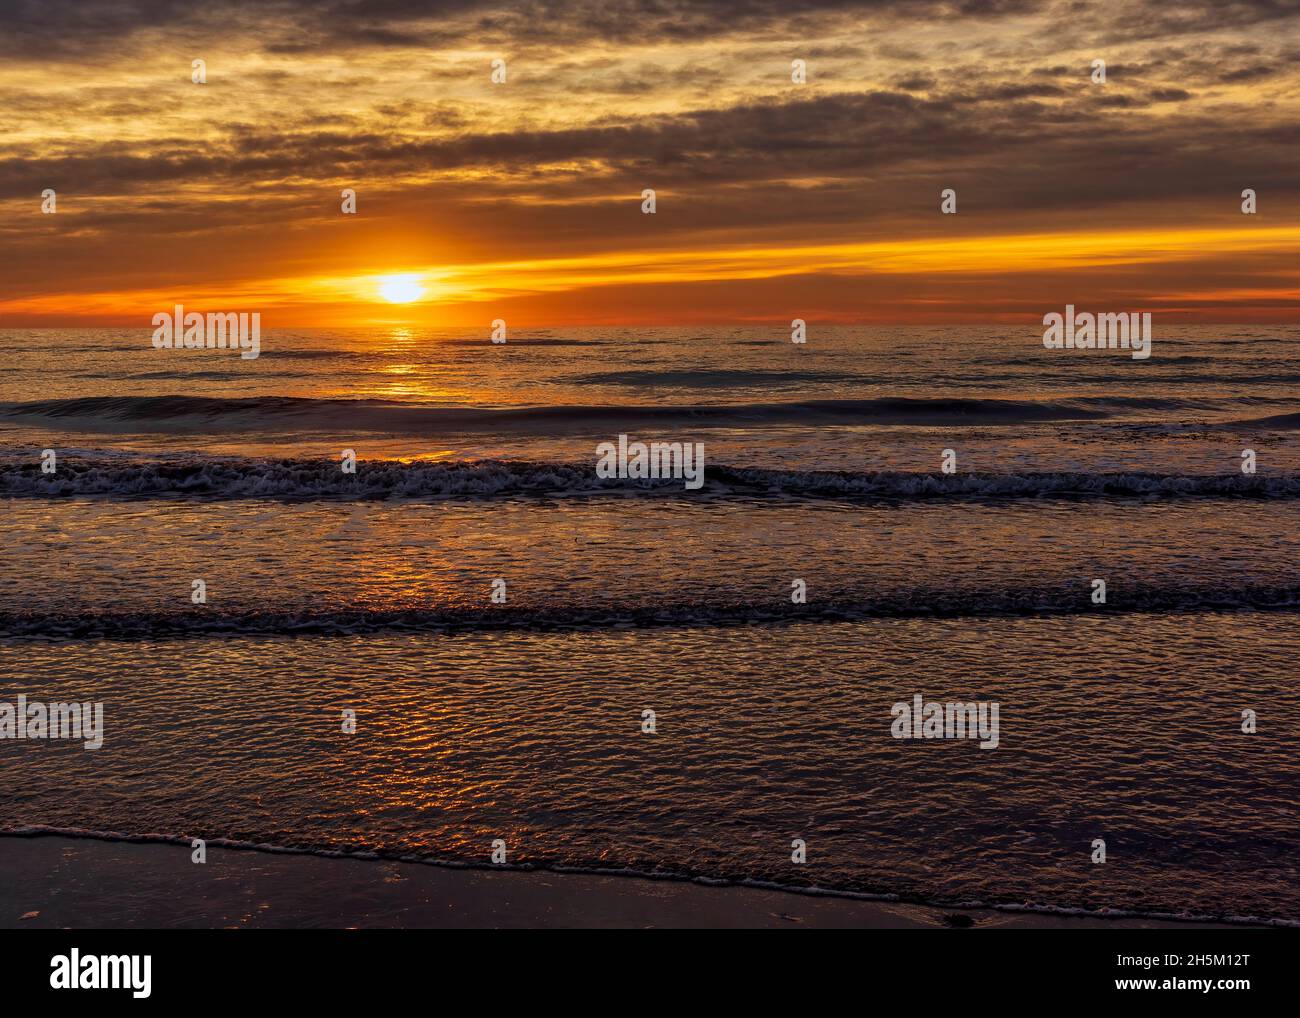 A peaceful sunrise on the beach of the Costa Azahar, Spain Stock Photo